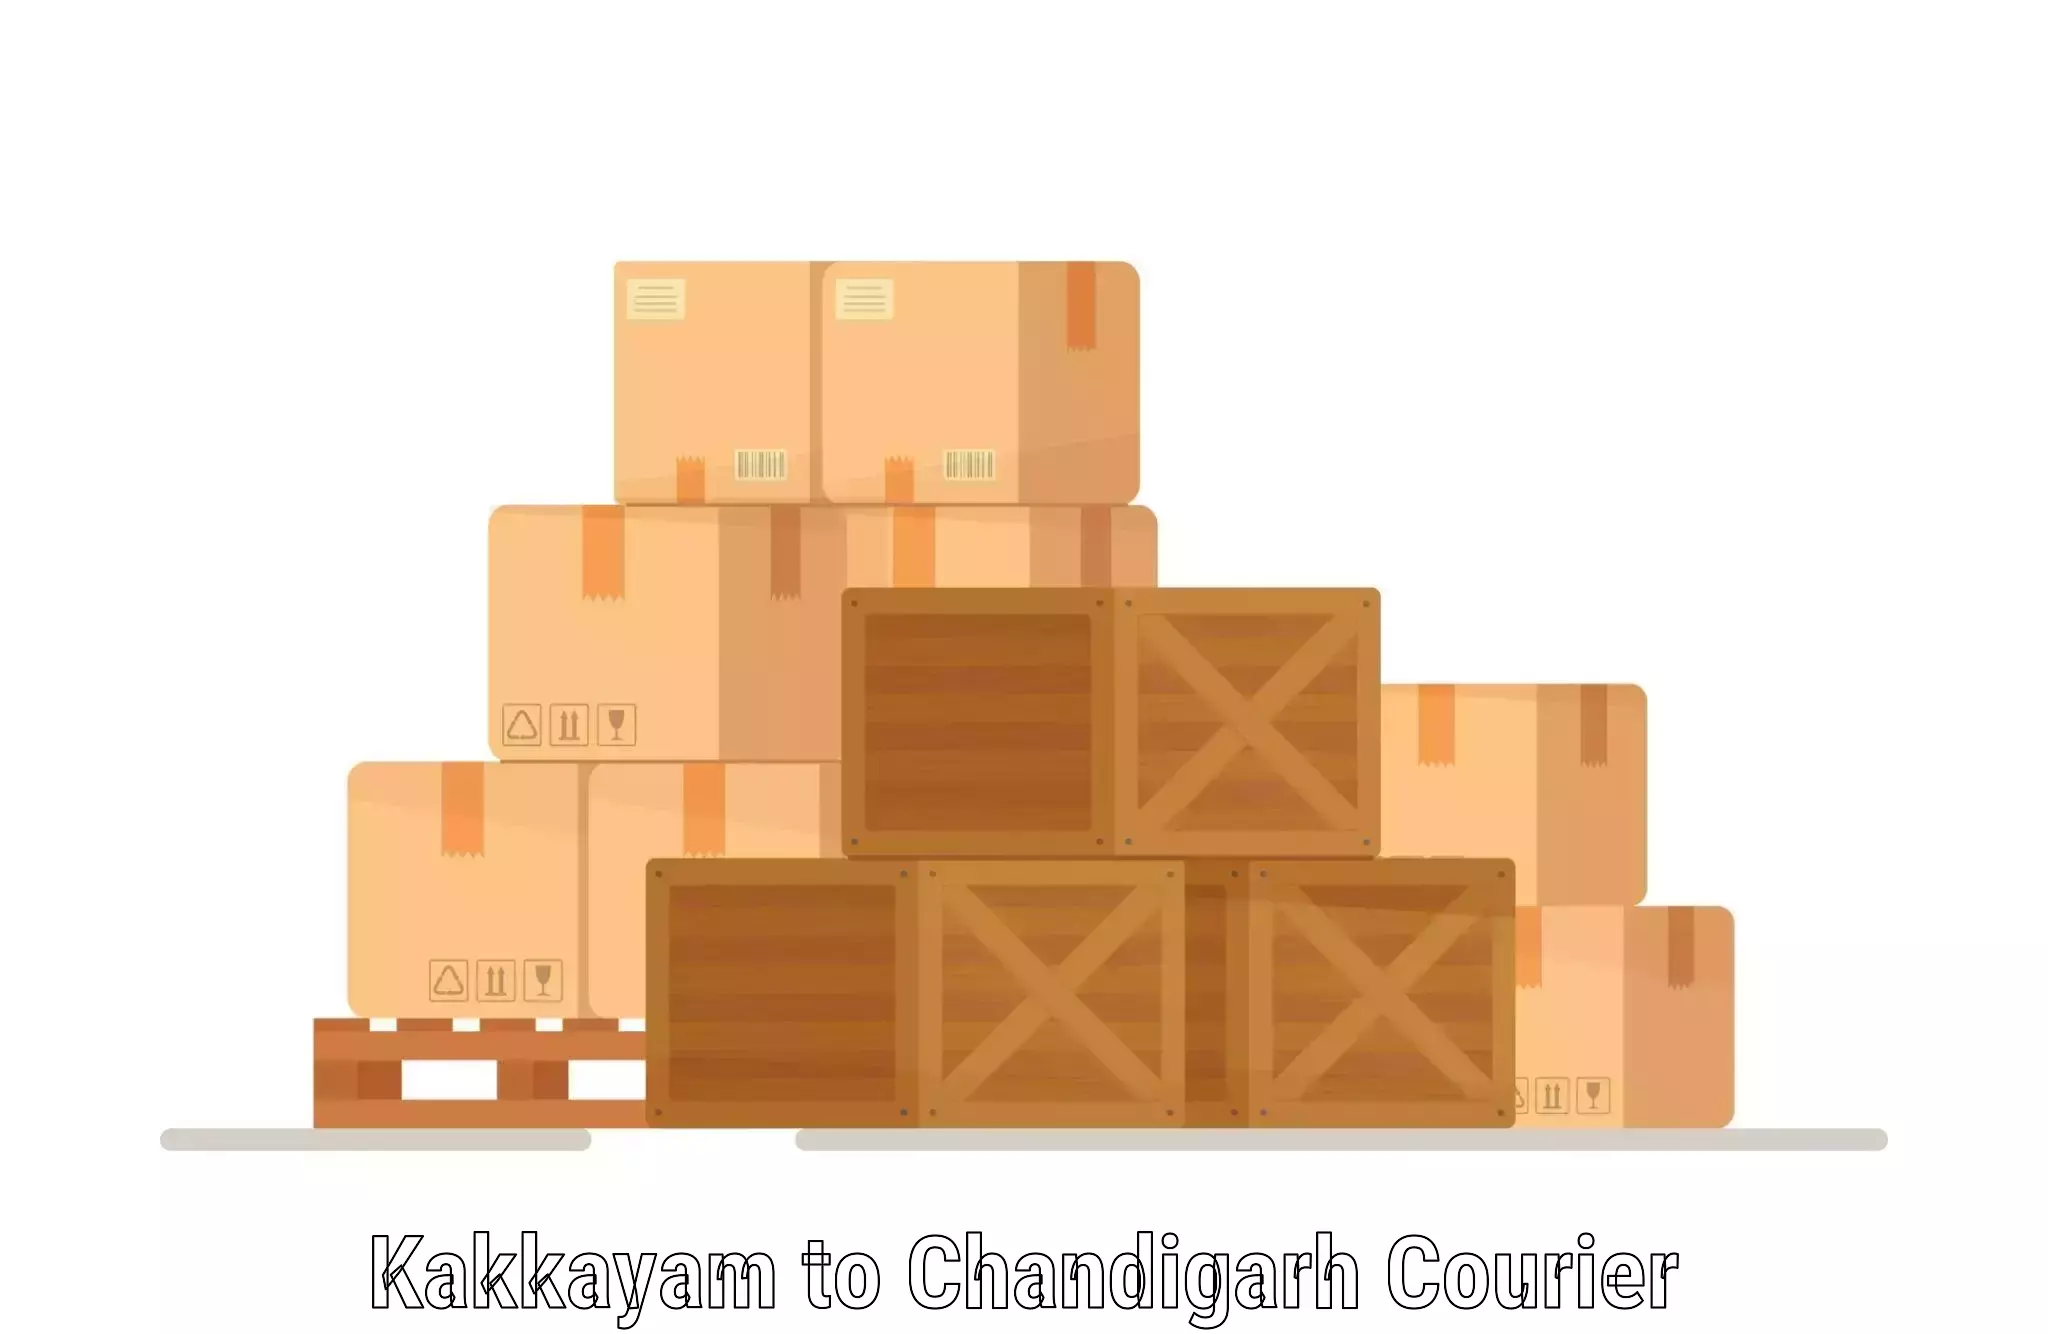 On-demand shipping options Kakkayam to Chandigarh